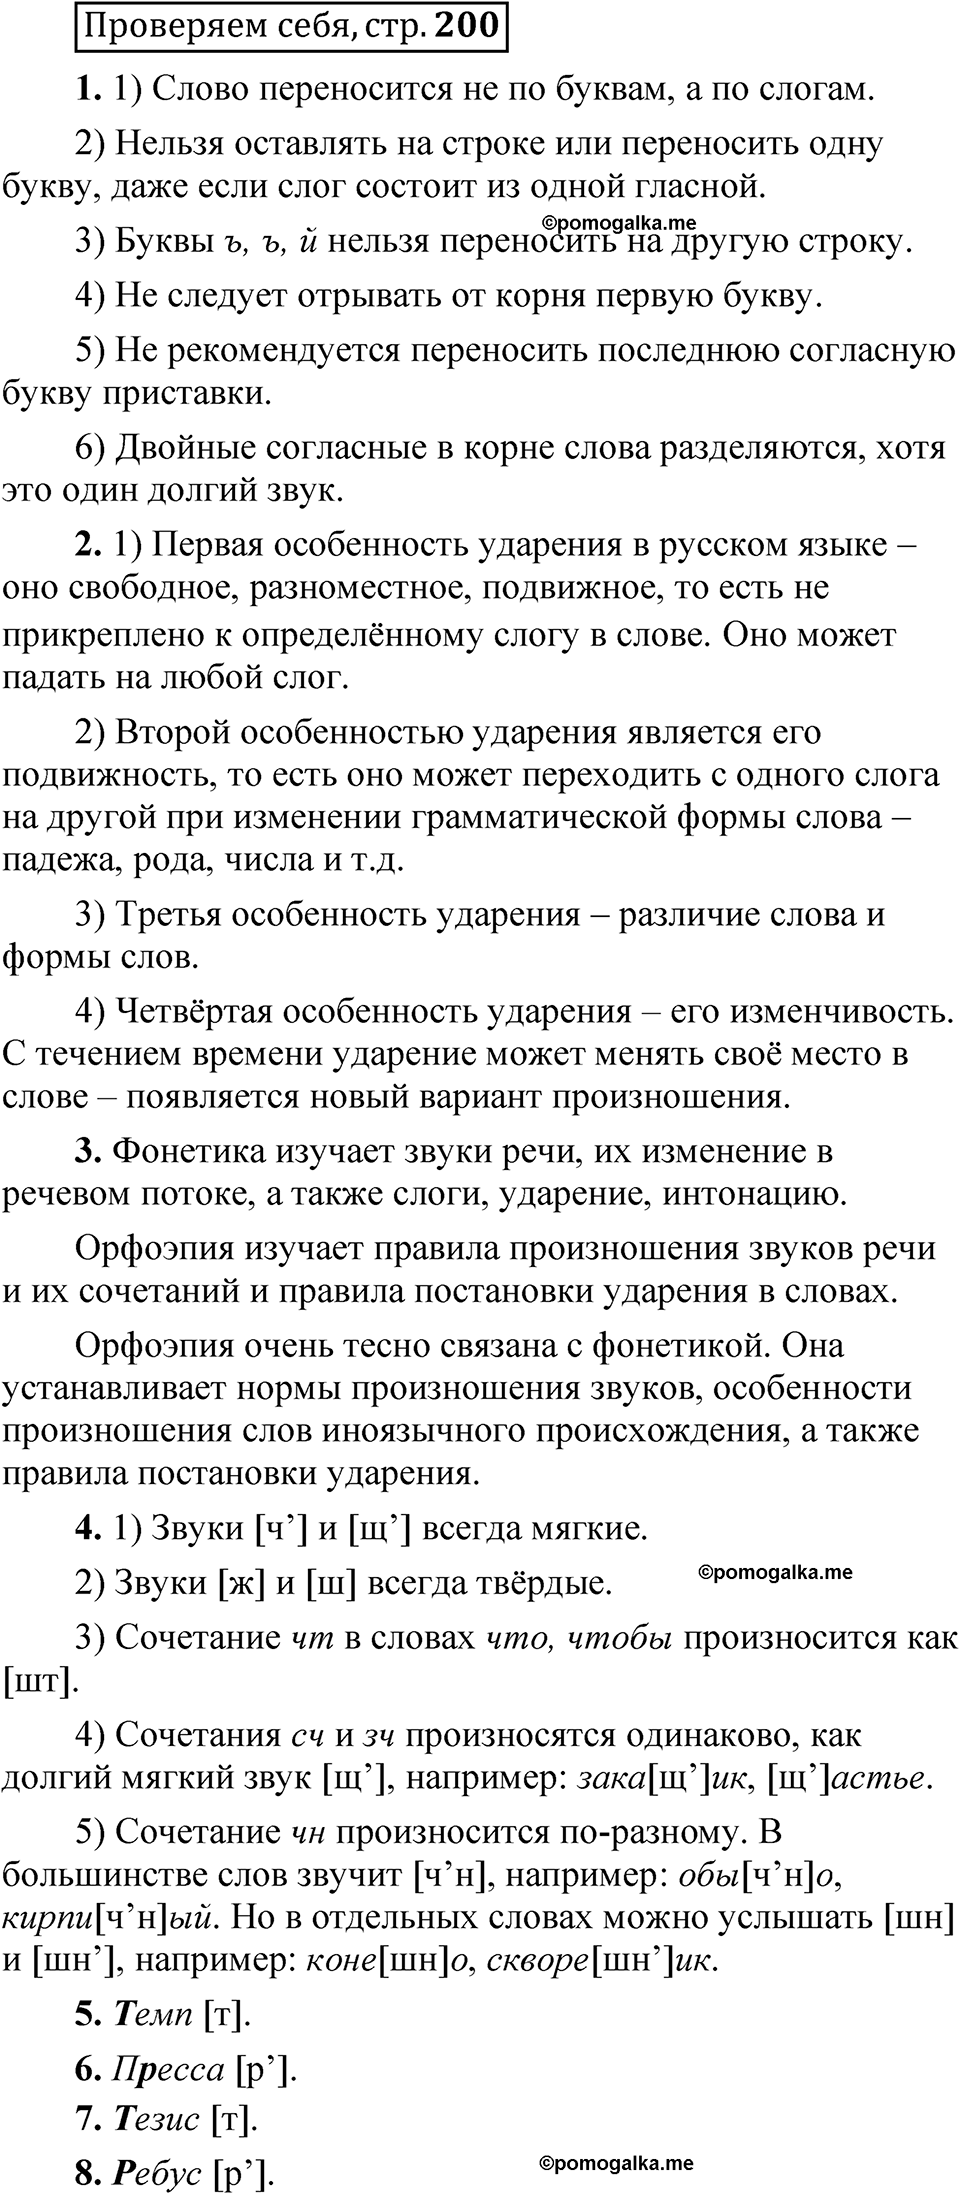 страница 200 Проверяем себя русский язык 5 класс Быстрова, Кибирева 1 часть 2021 год